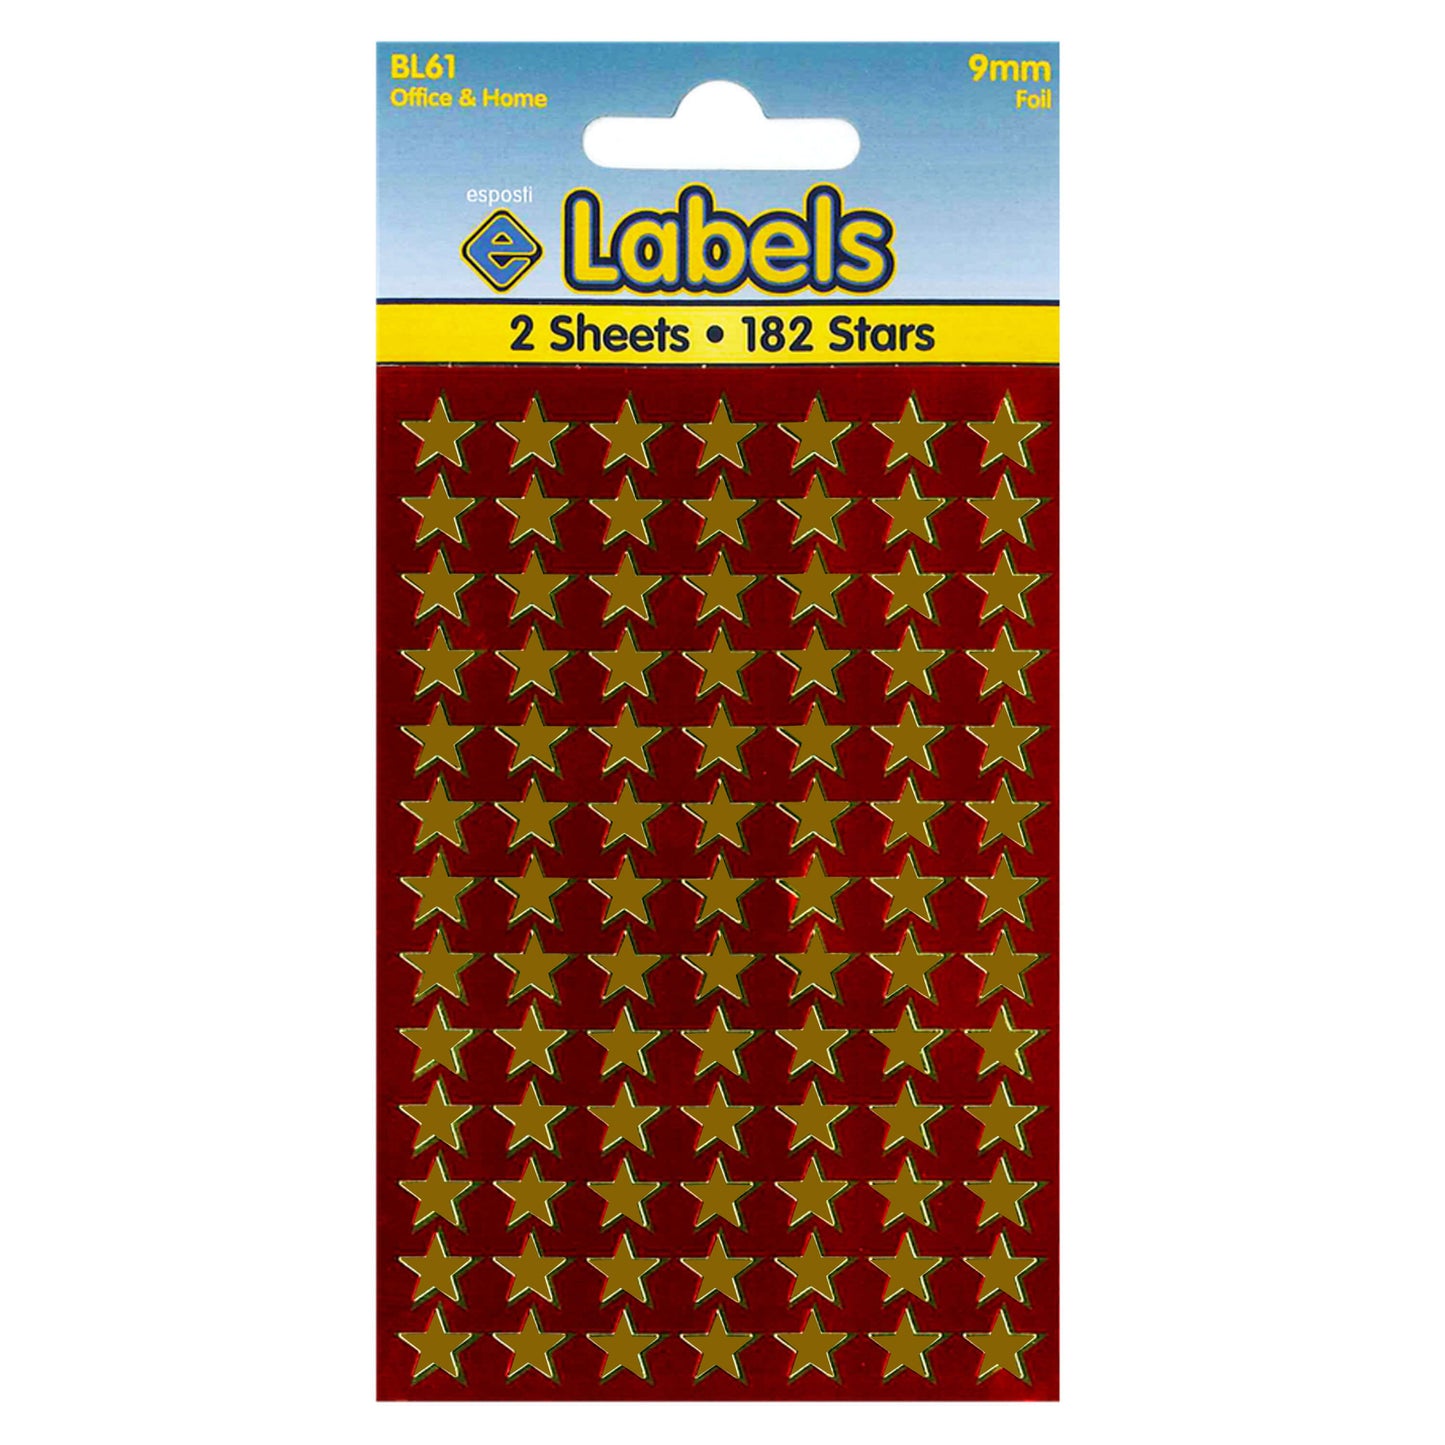 Foil Gold Stars 9mm Stickers - BL61